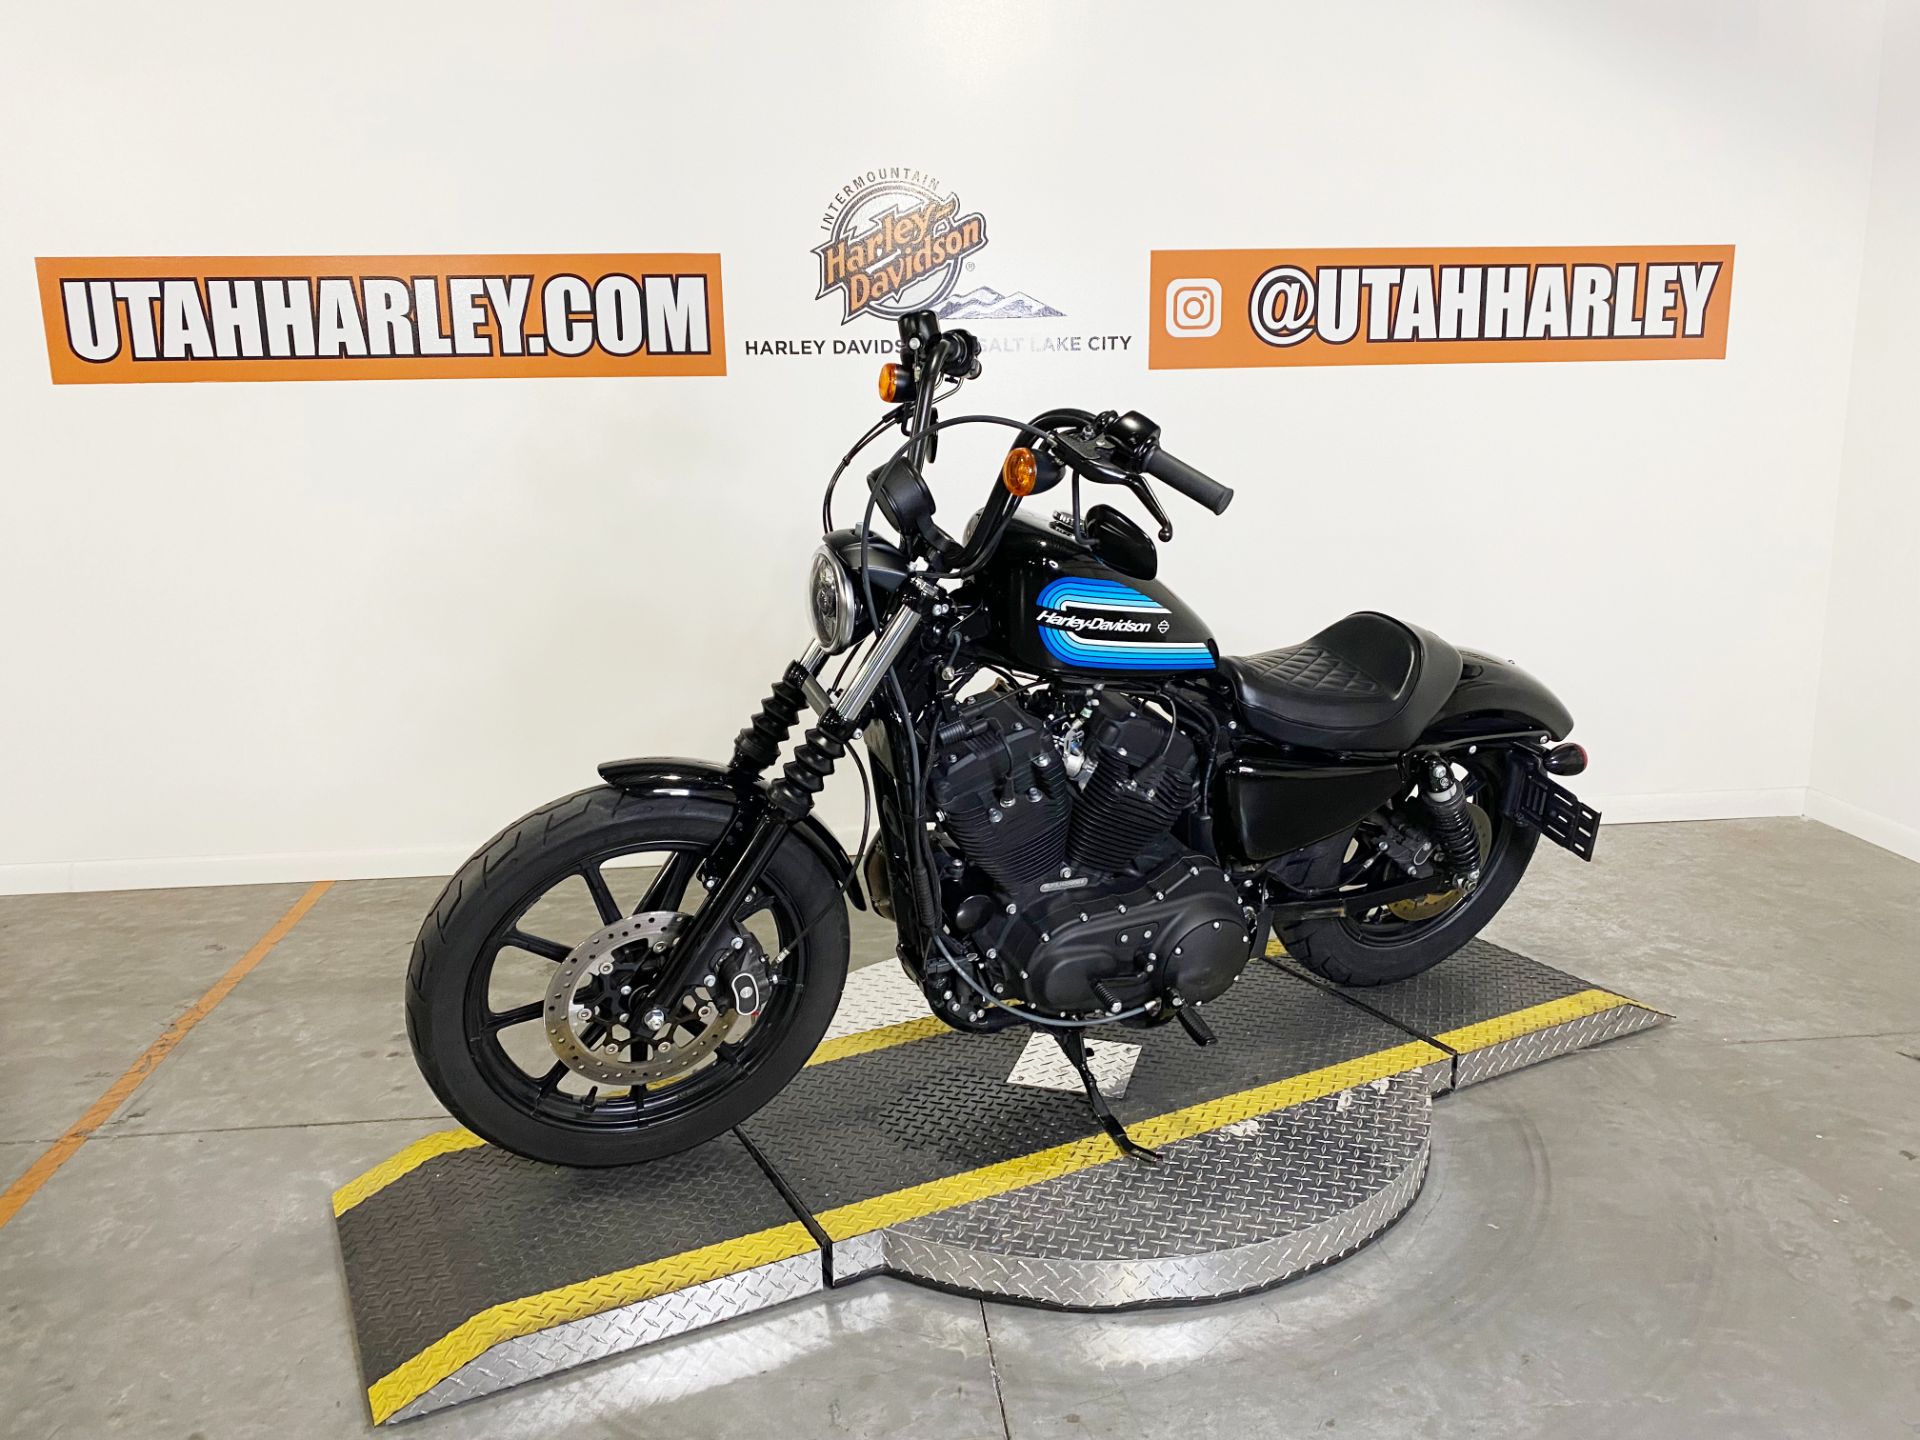 2018 Harley-Davidson XL1200 Iron in Salt Lake City, Utah - Photo 4